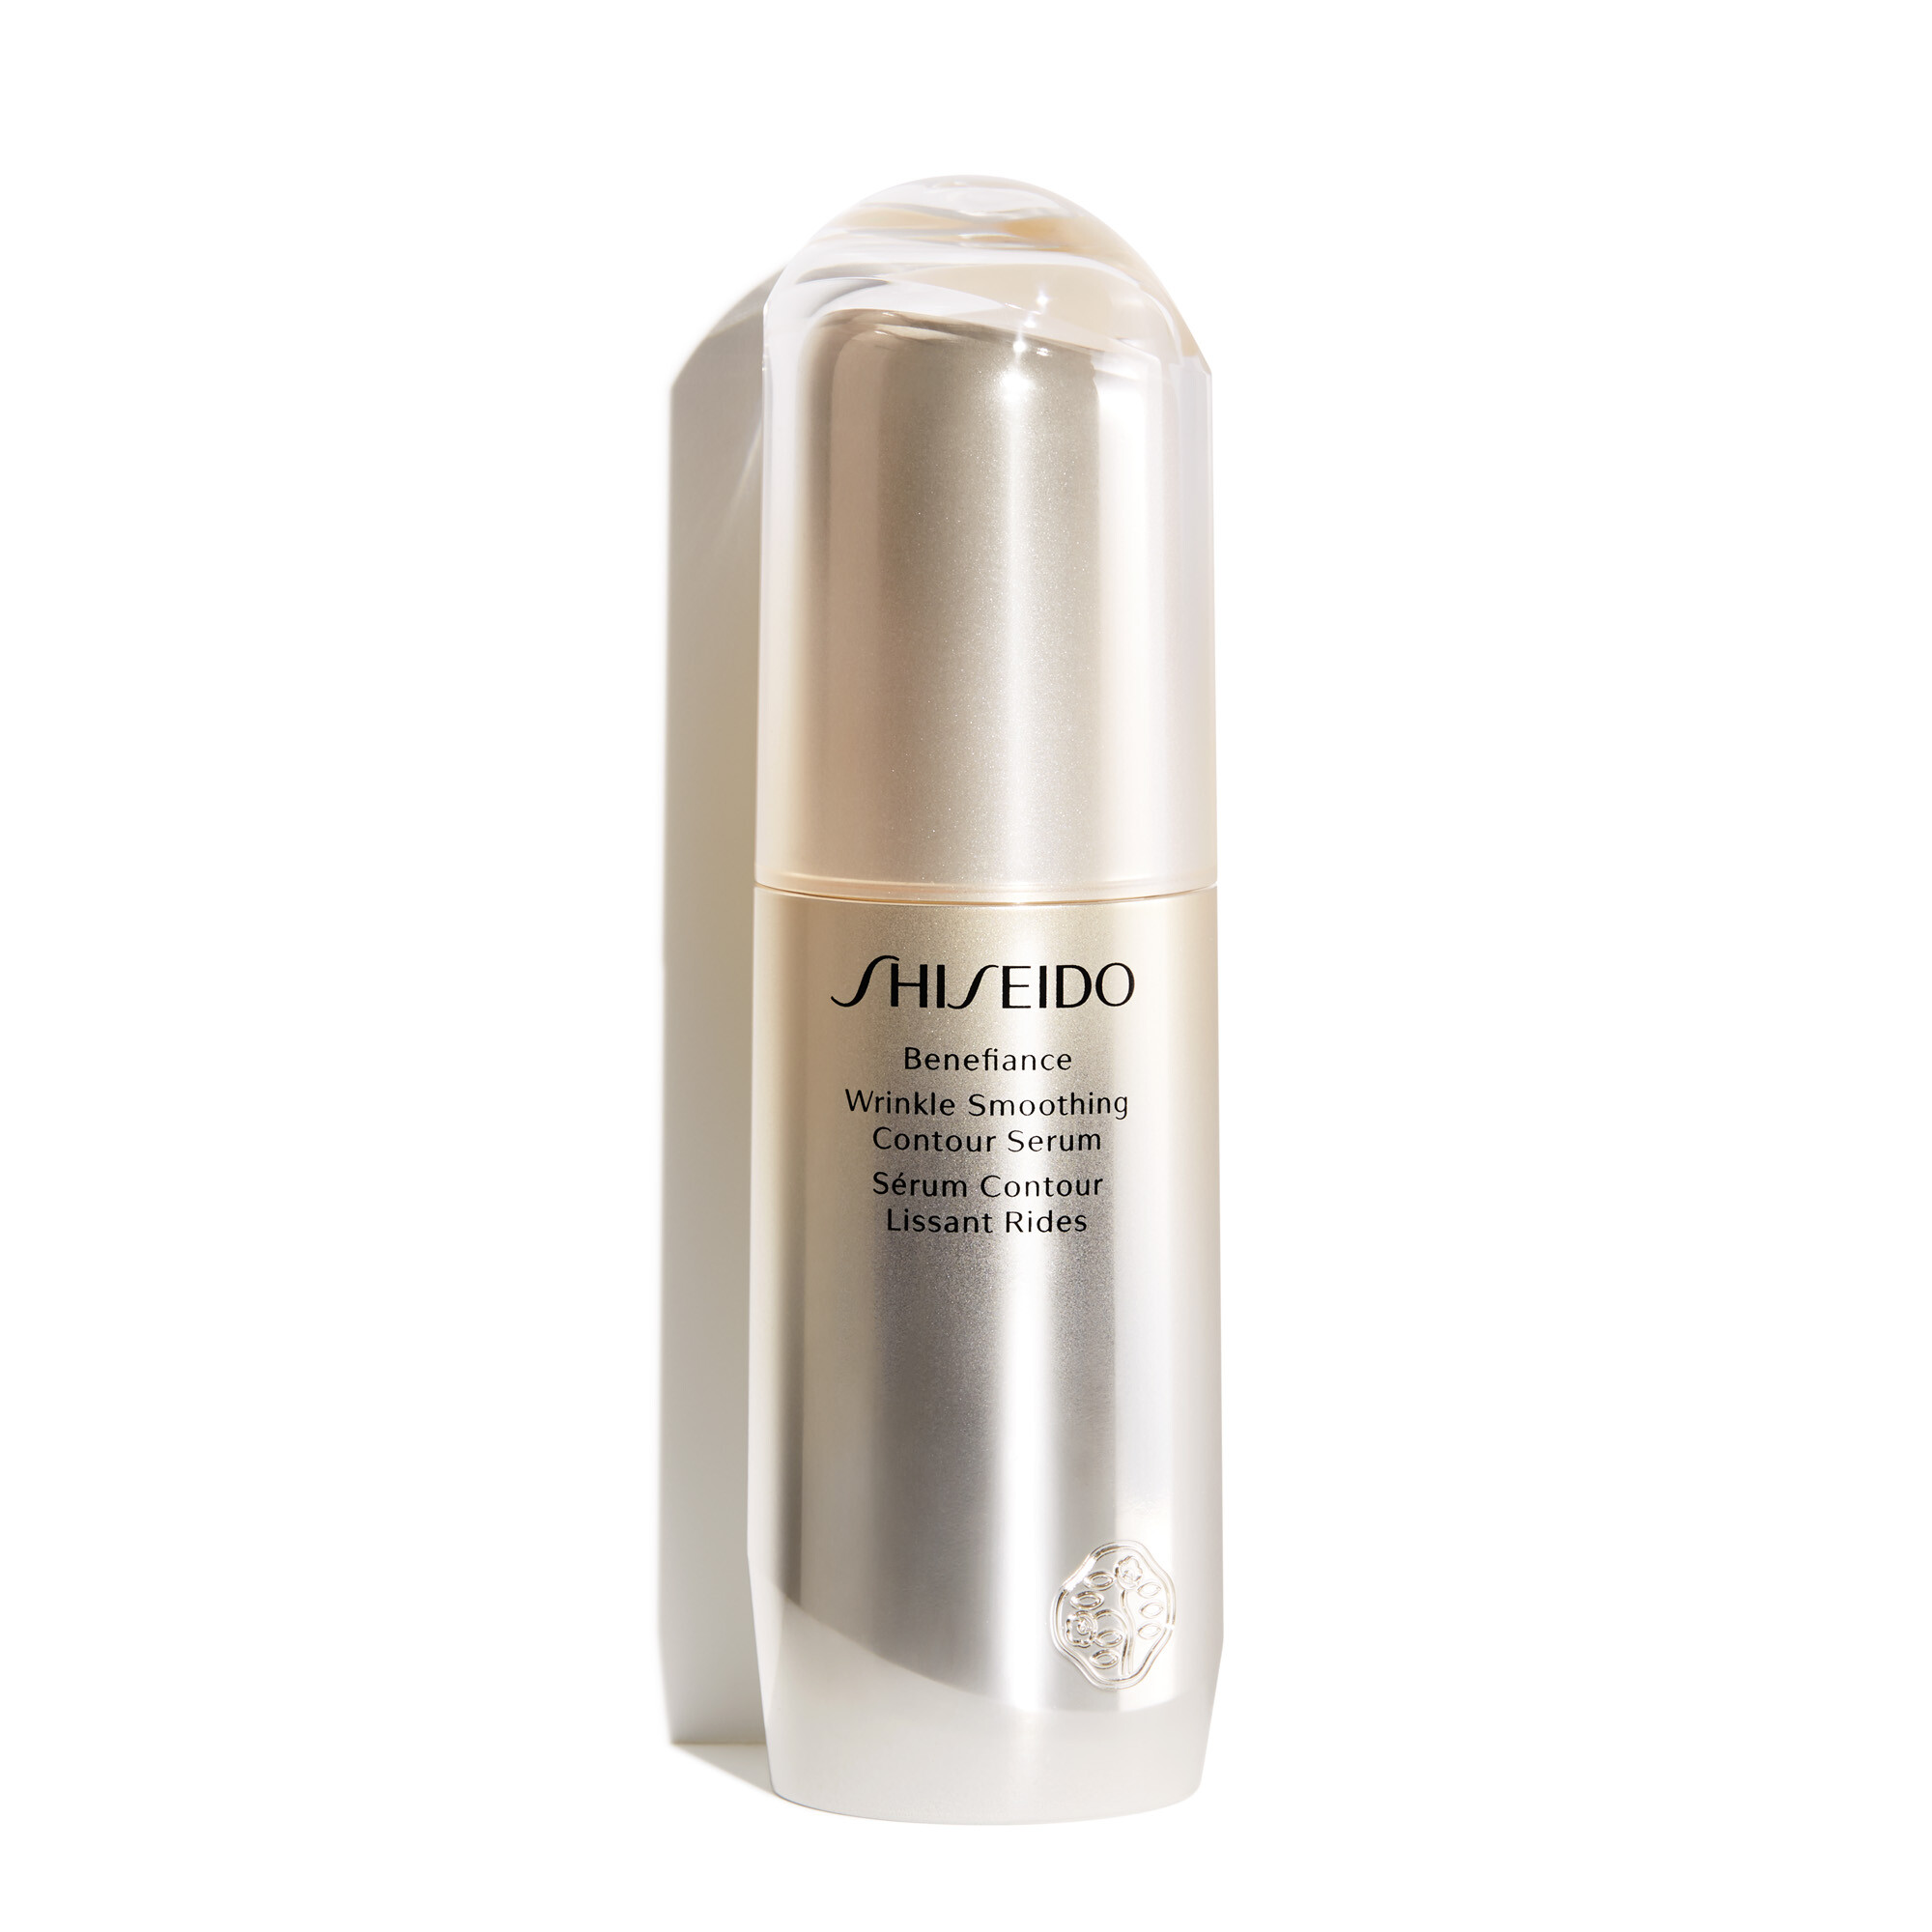 Gesichtspflege Shiseido Benefiance Wrinkle Smoothing Contour Serum 30ml kaufen